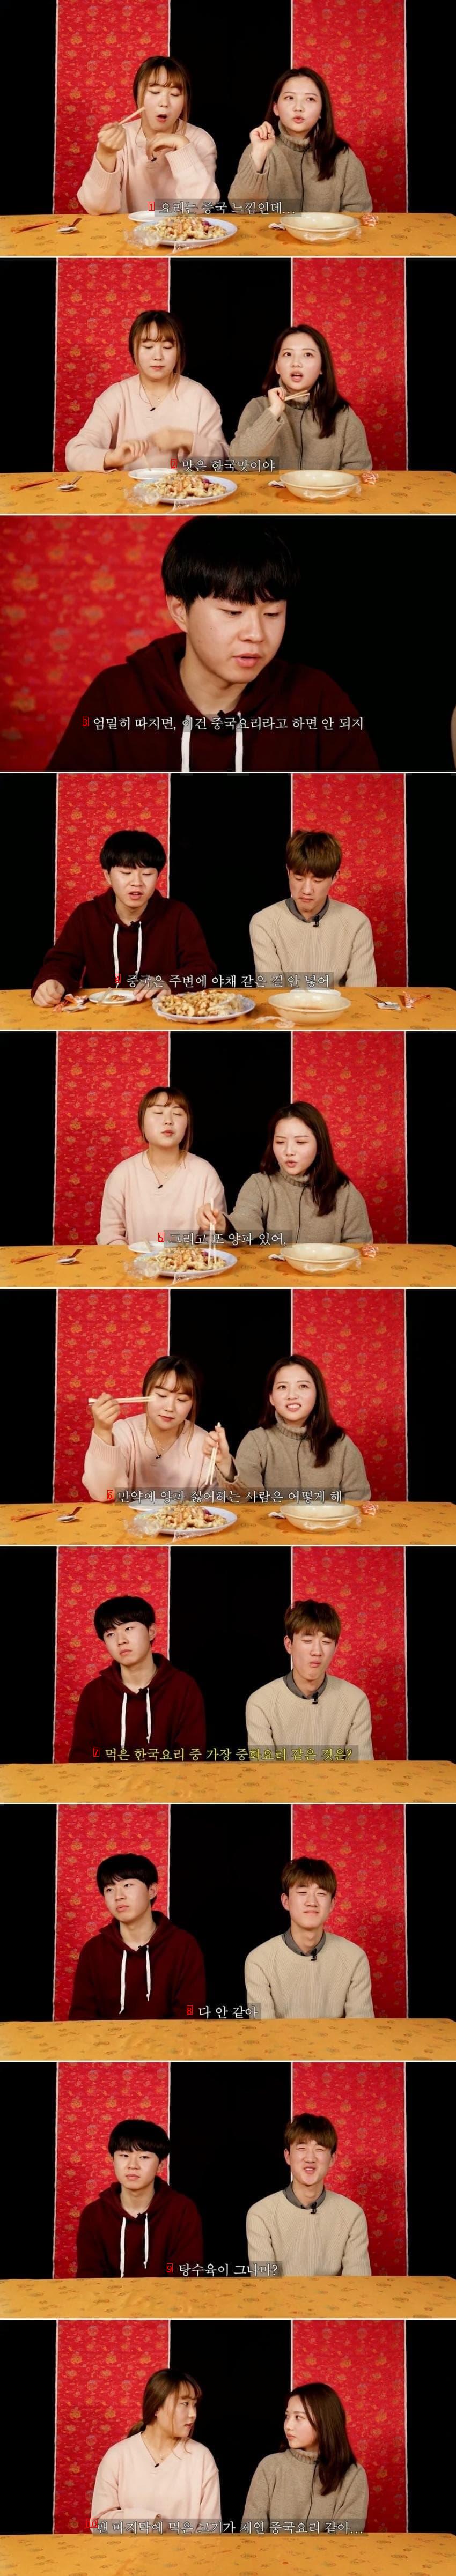 ジャージャー麺、チャンポン、酢豚を食べたことのある中国人の反応jpg